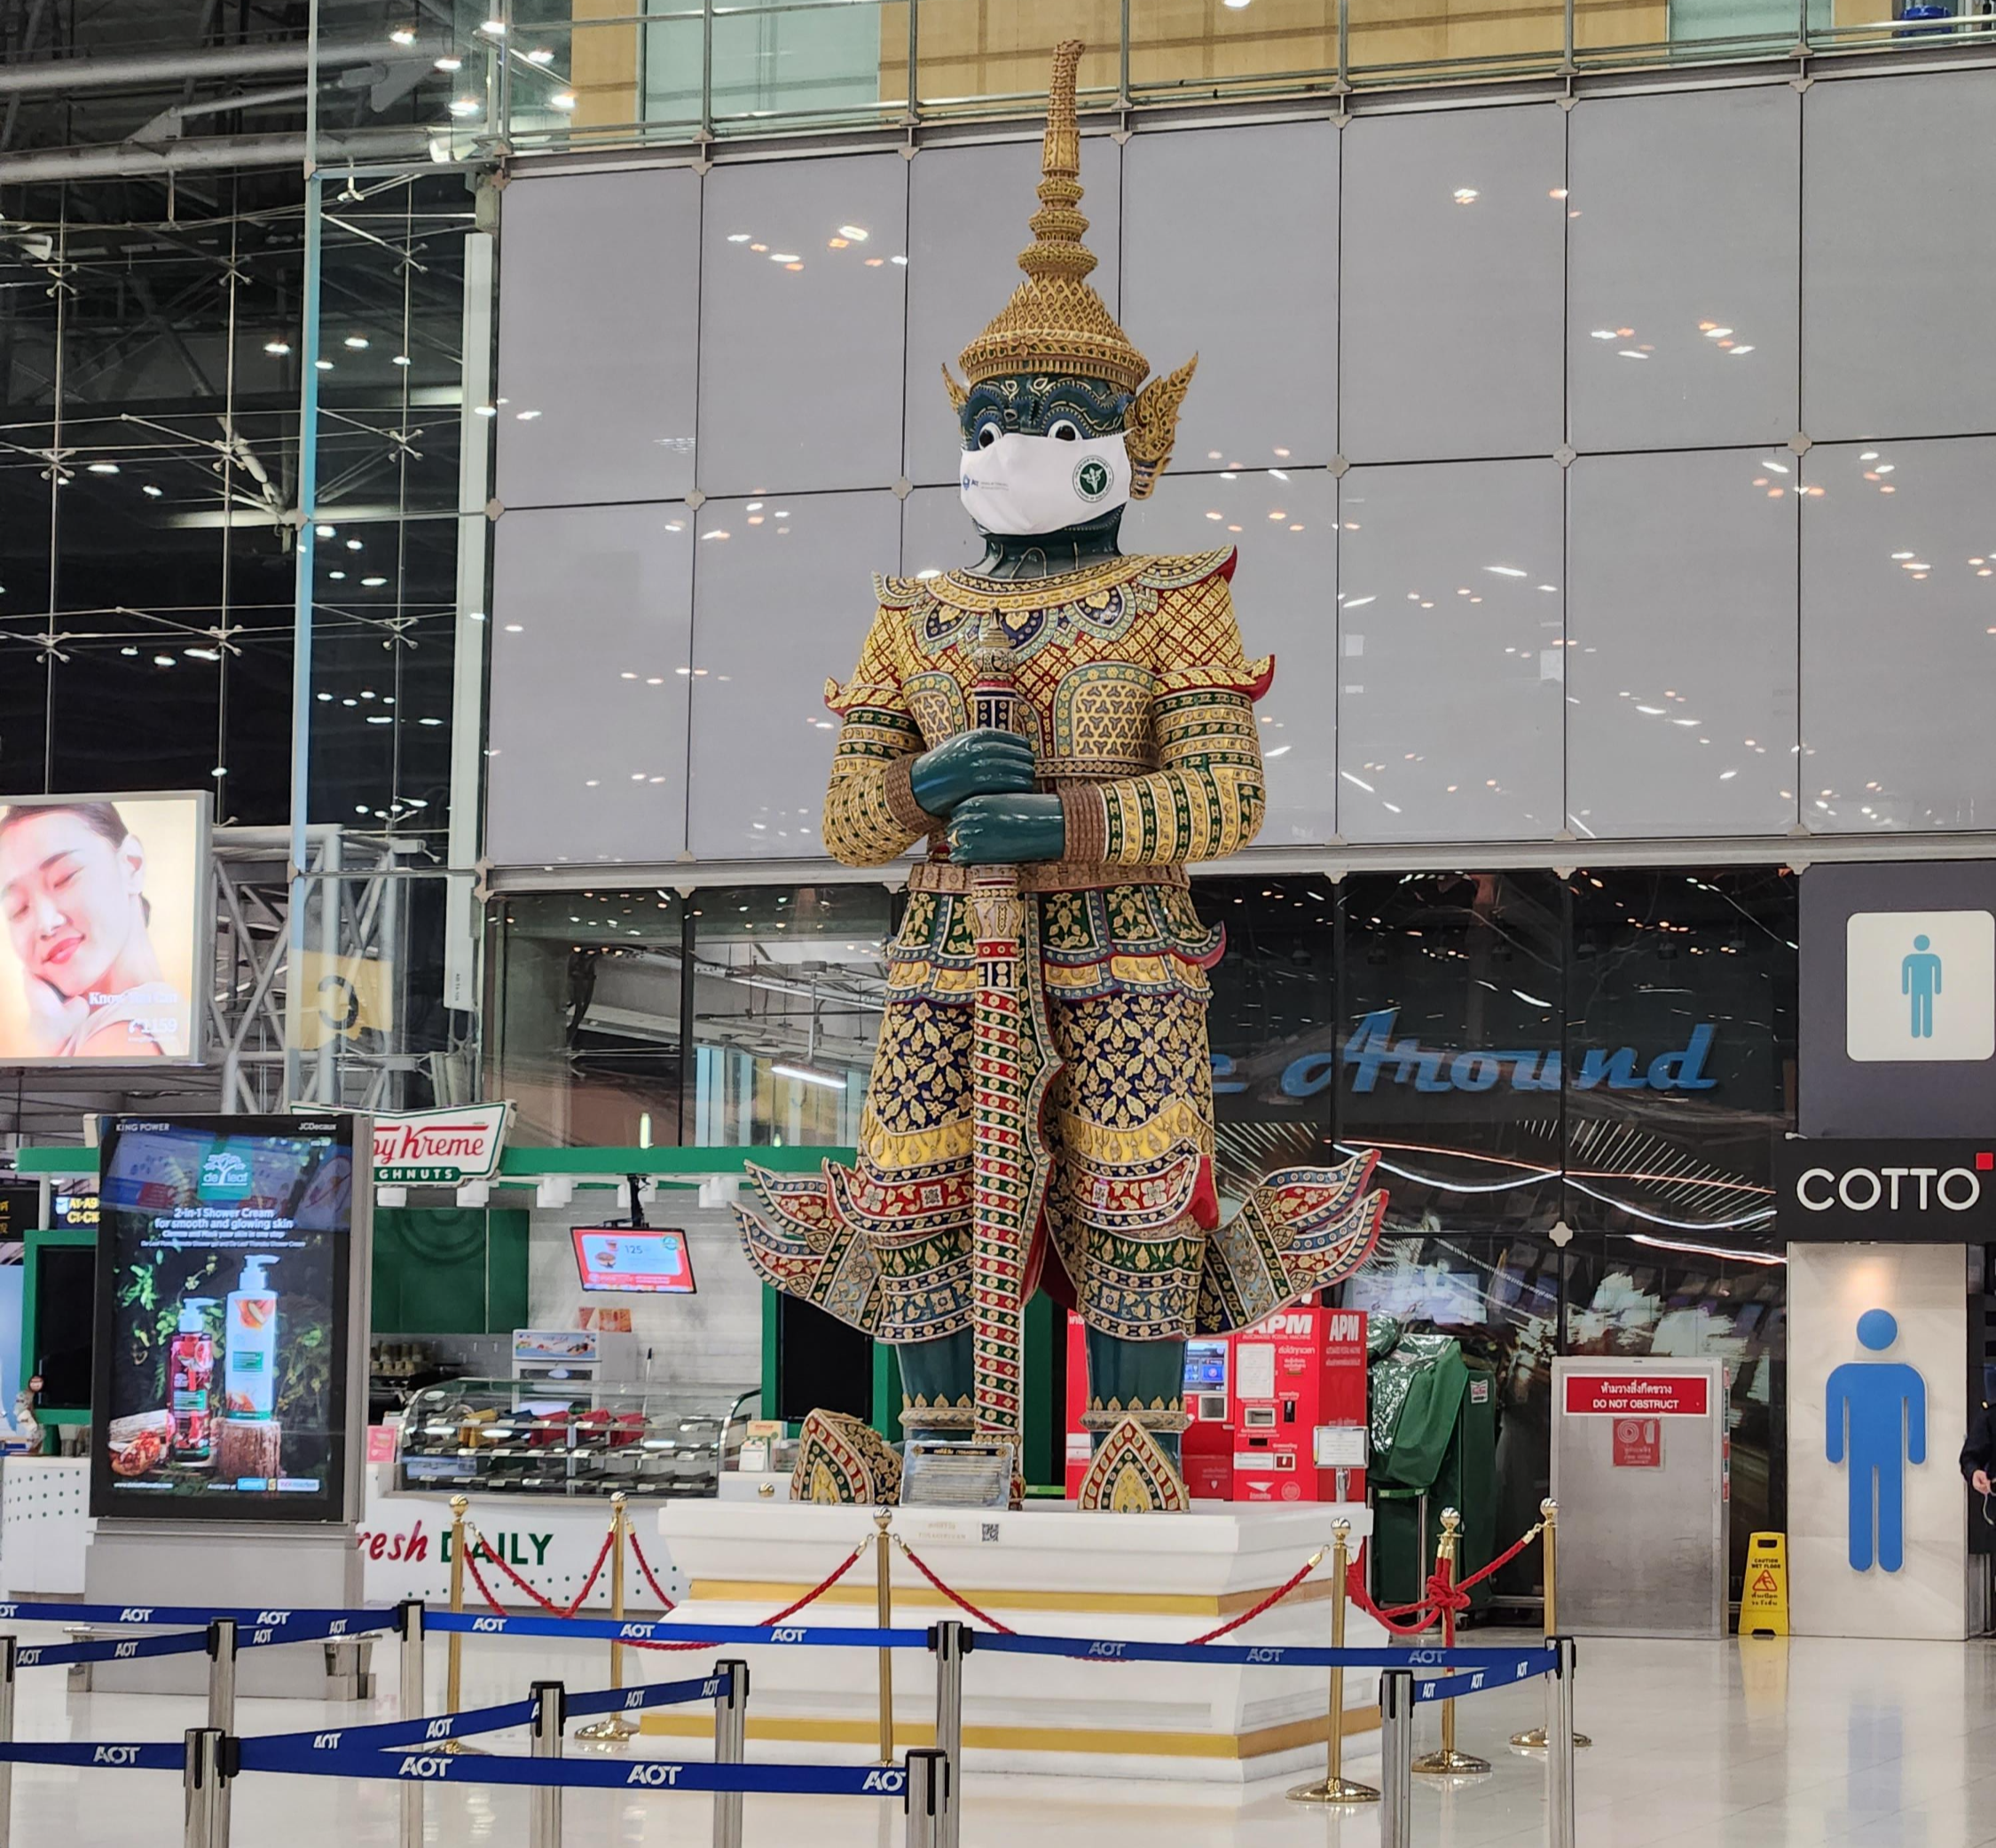 인천에서 방콕 가는 비행 시간과 항공권 금액